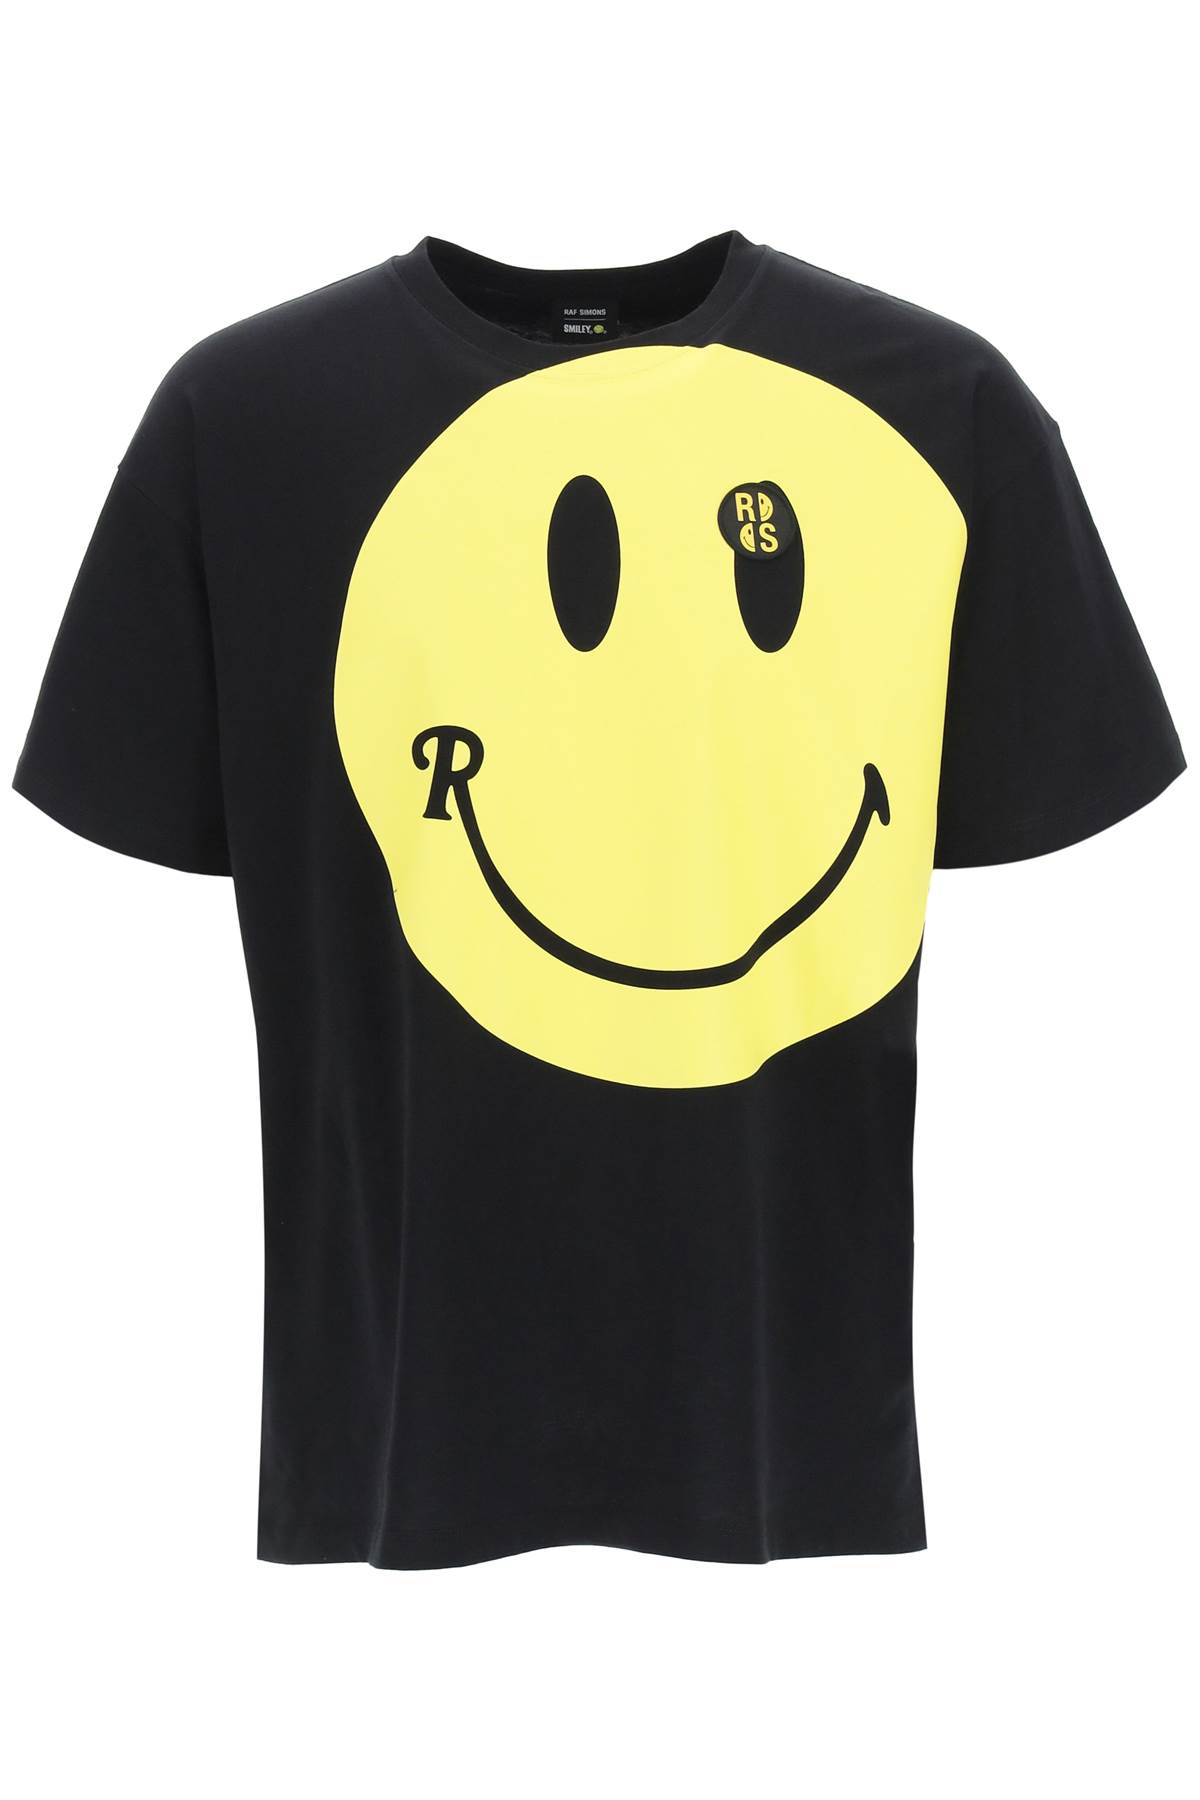 Raf Simons Smiley T-shirt